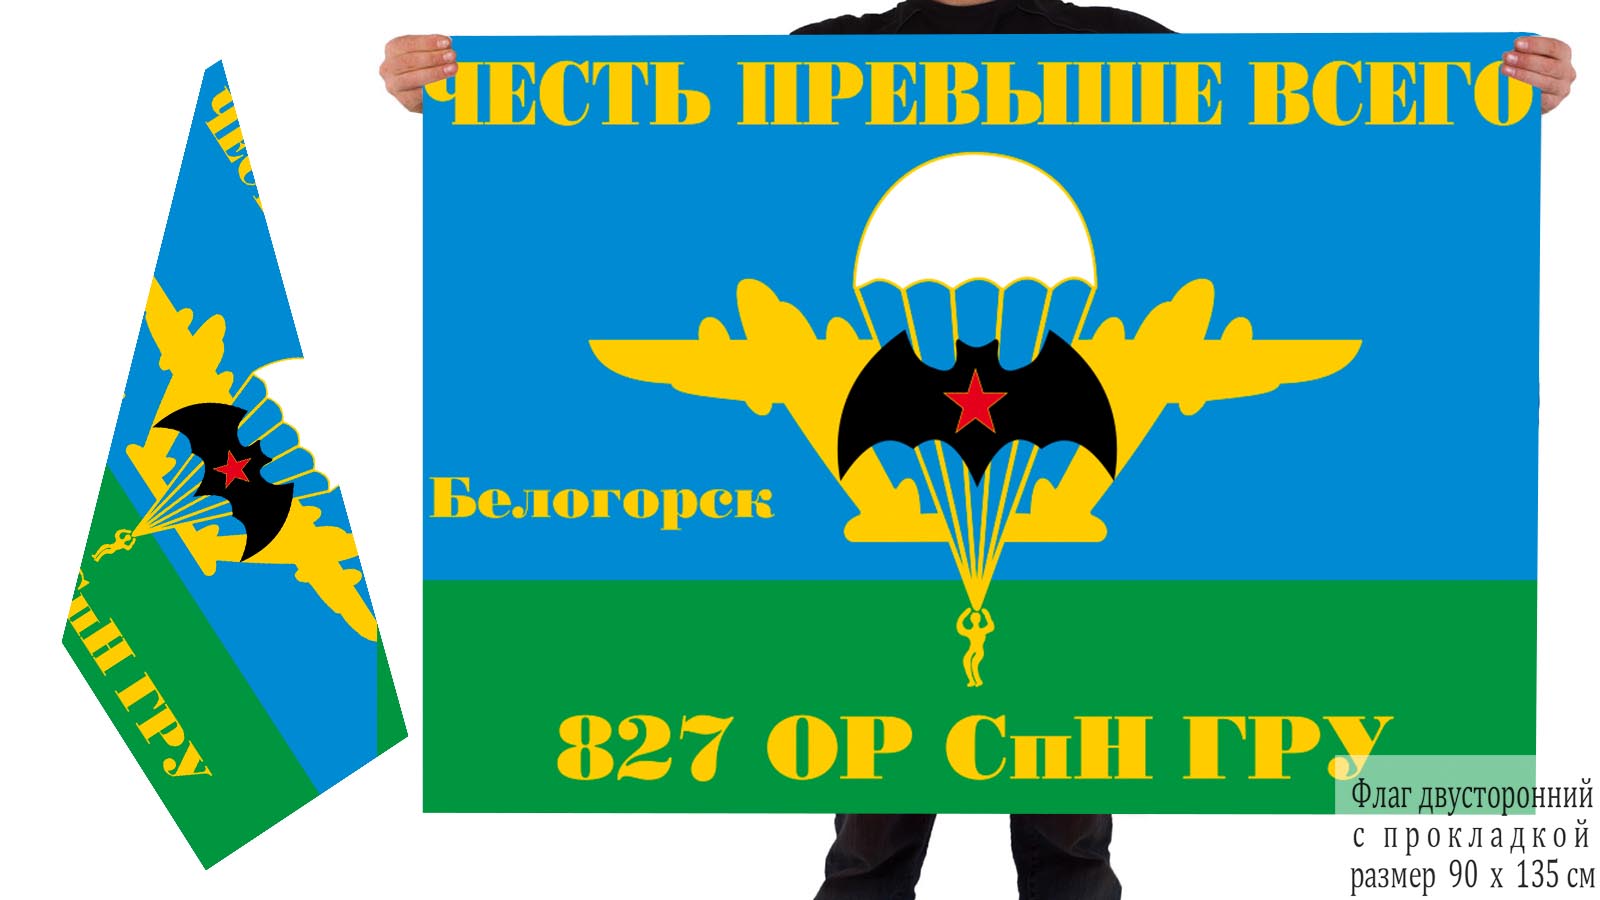  Двусторонний флаг 827 ОРСпН ГРУ